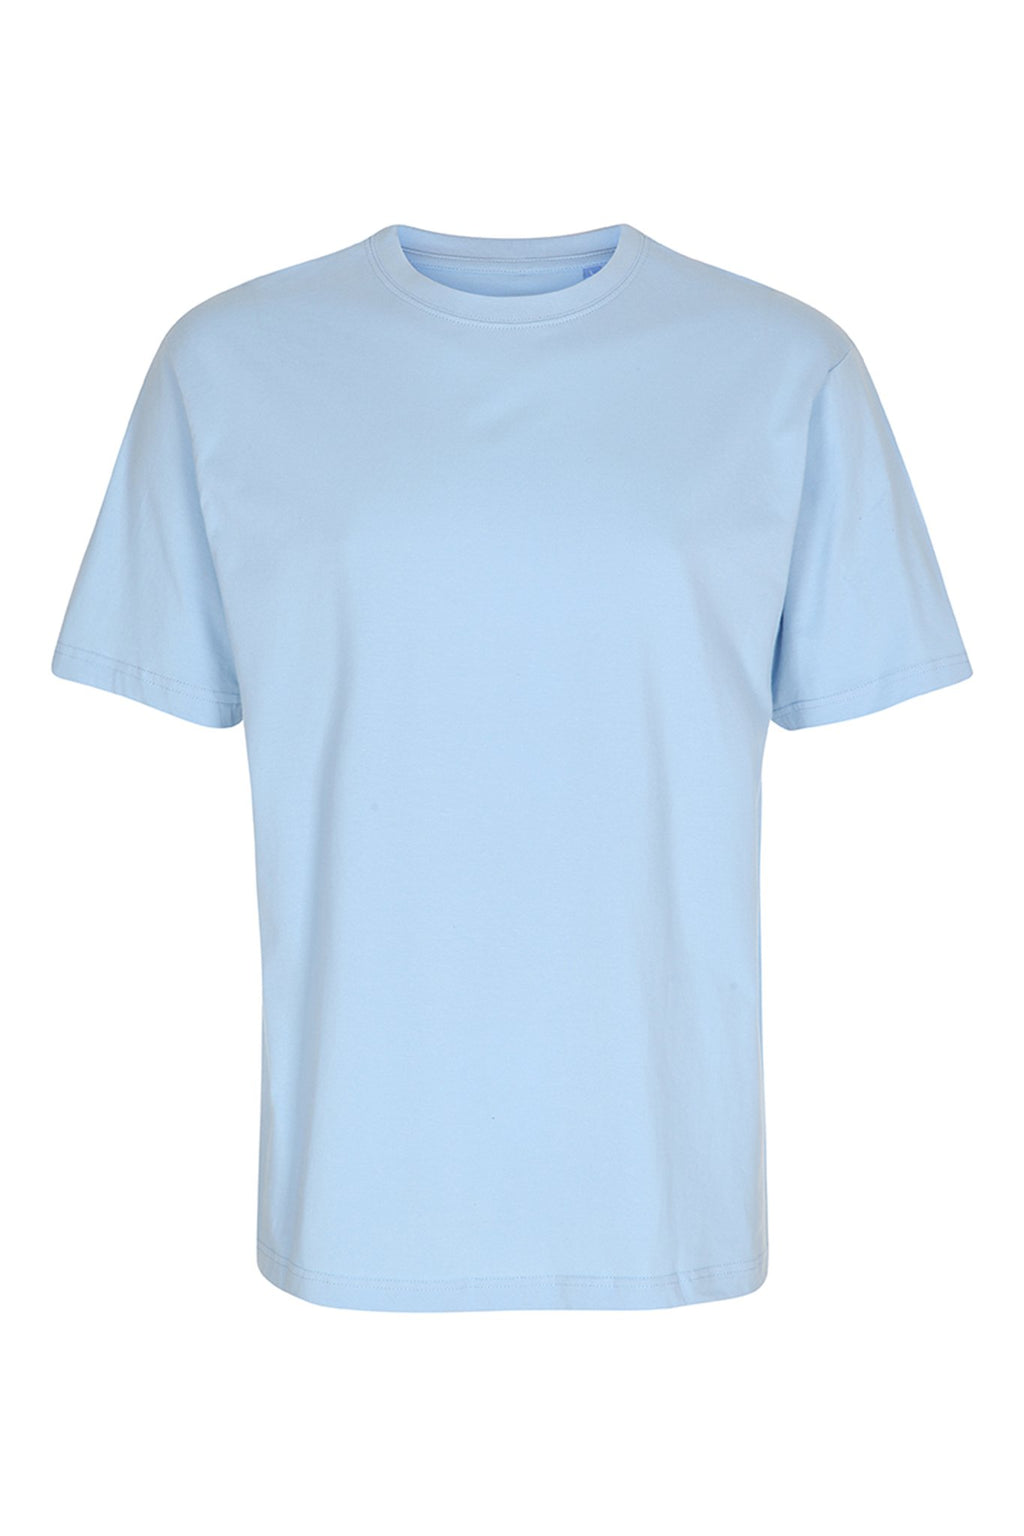 Basic Vaikų marškinėliai - šviesiai mėlyni